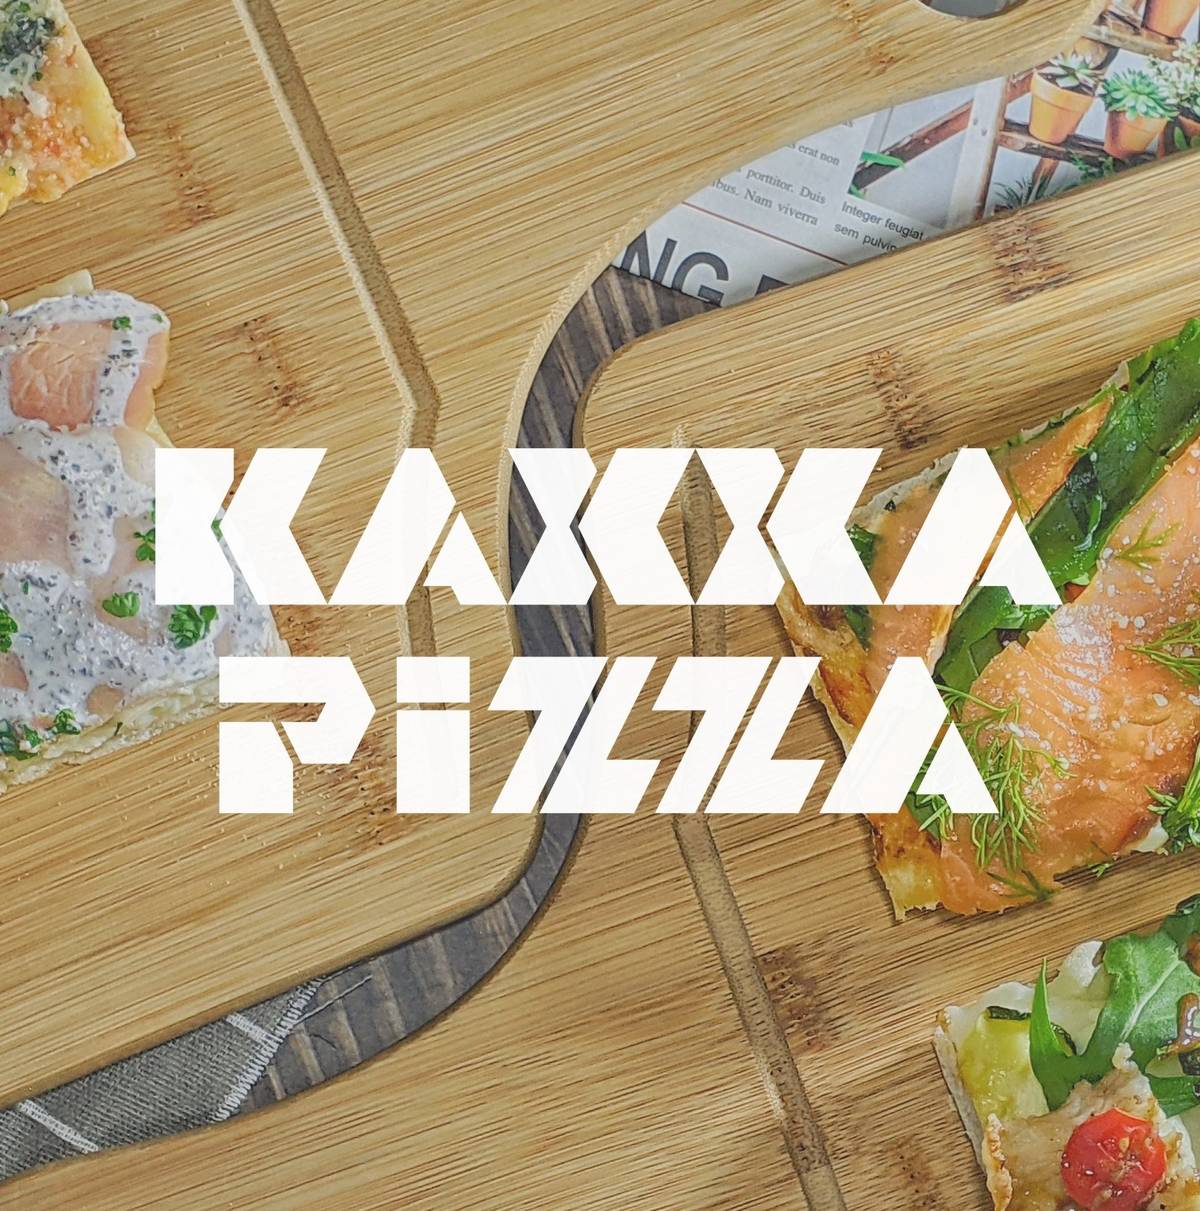 KAXXA PIZZA 咔嚓羅馬披薩